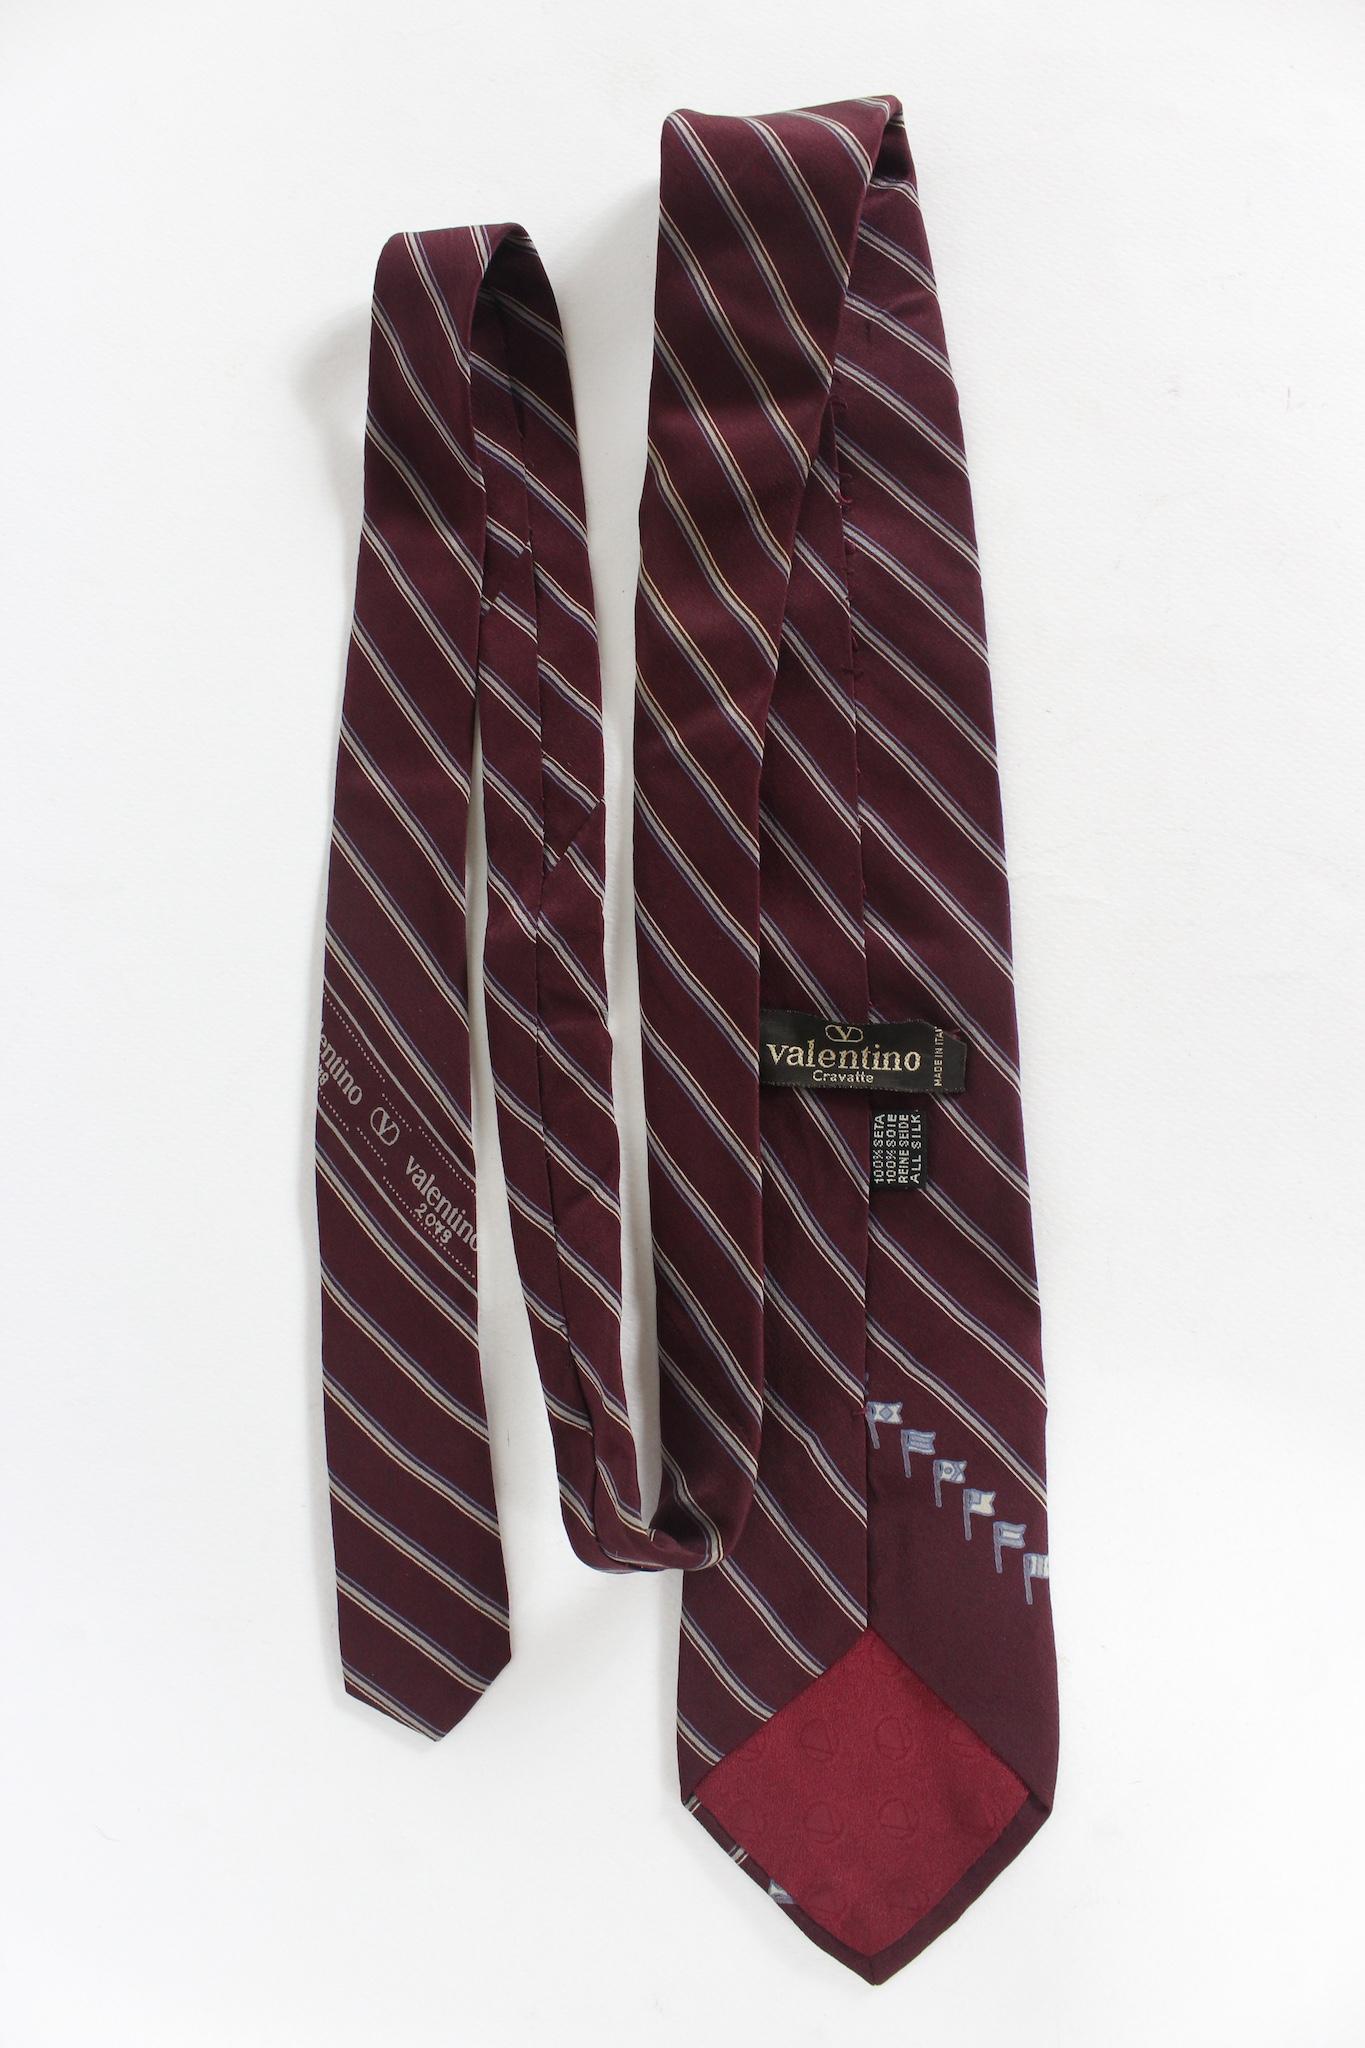 Cravate Valentino vintage des années 90. Couleur rouge avec des rayures beiges. 100% soie. Fabriqué en Italie.

Longueur : 143 cm
Largeur : 8 cm